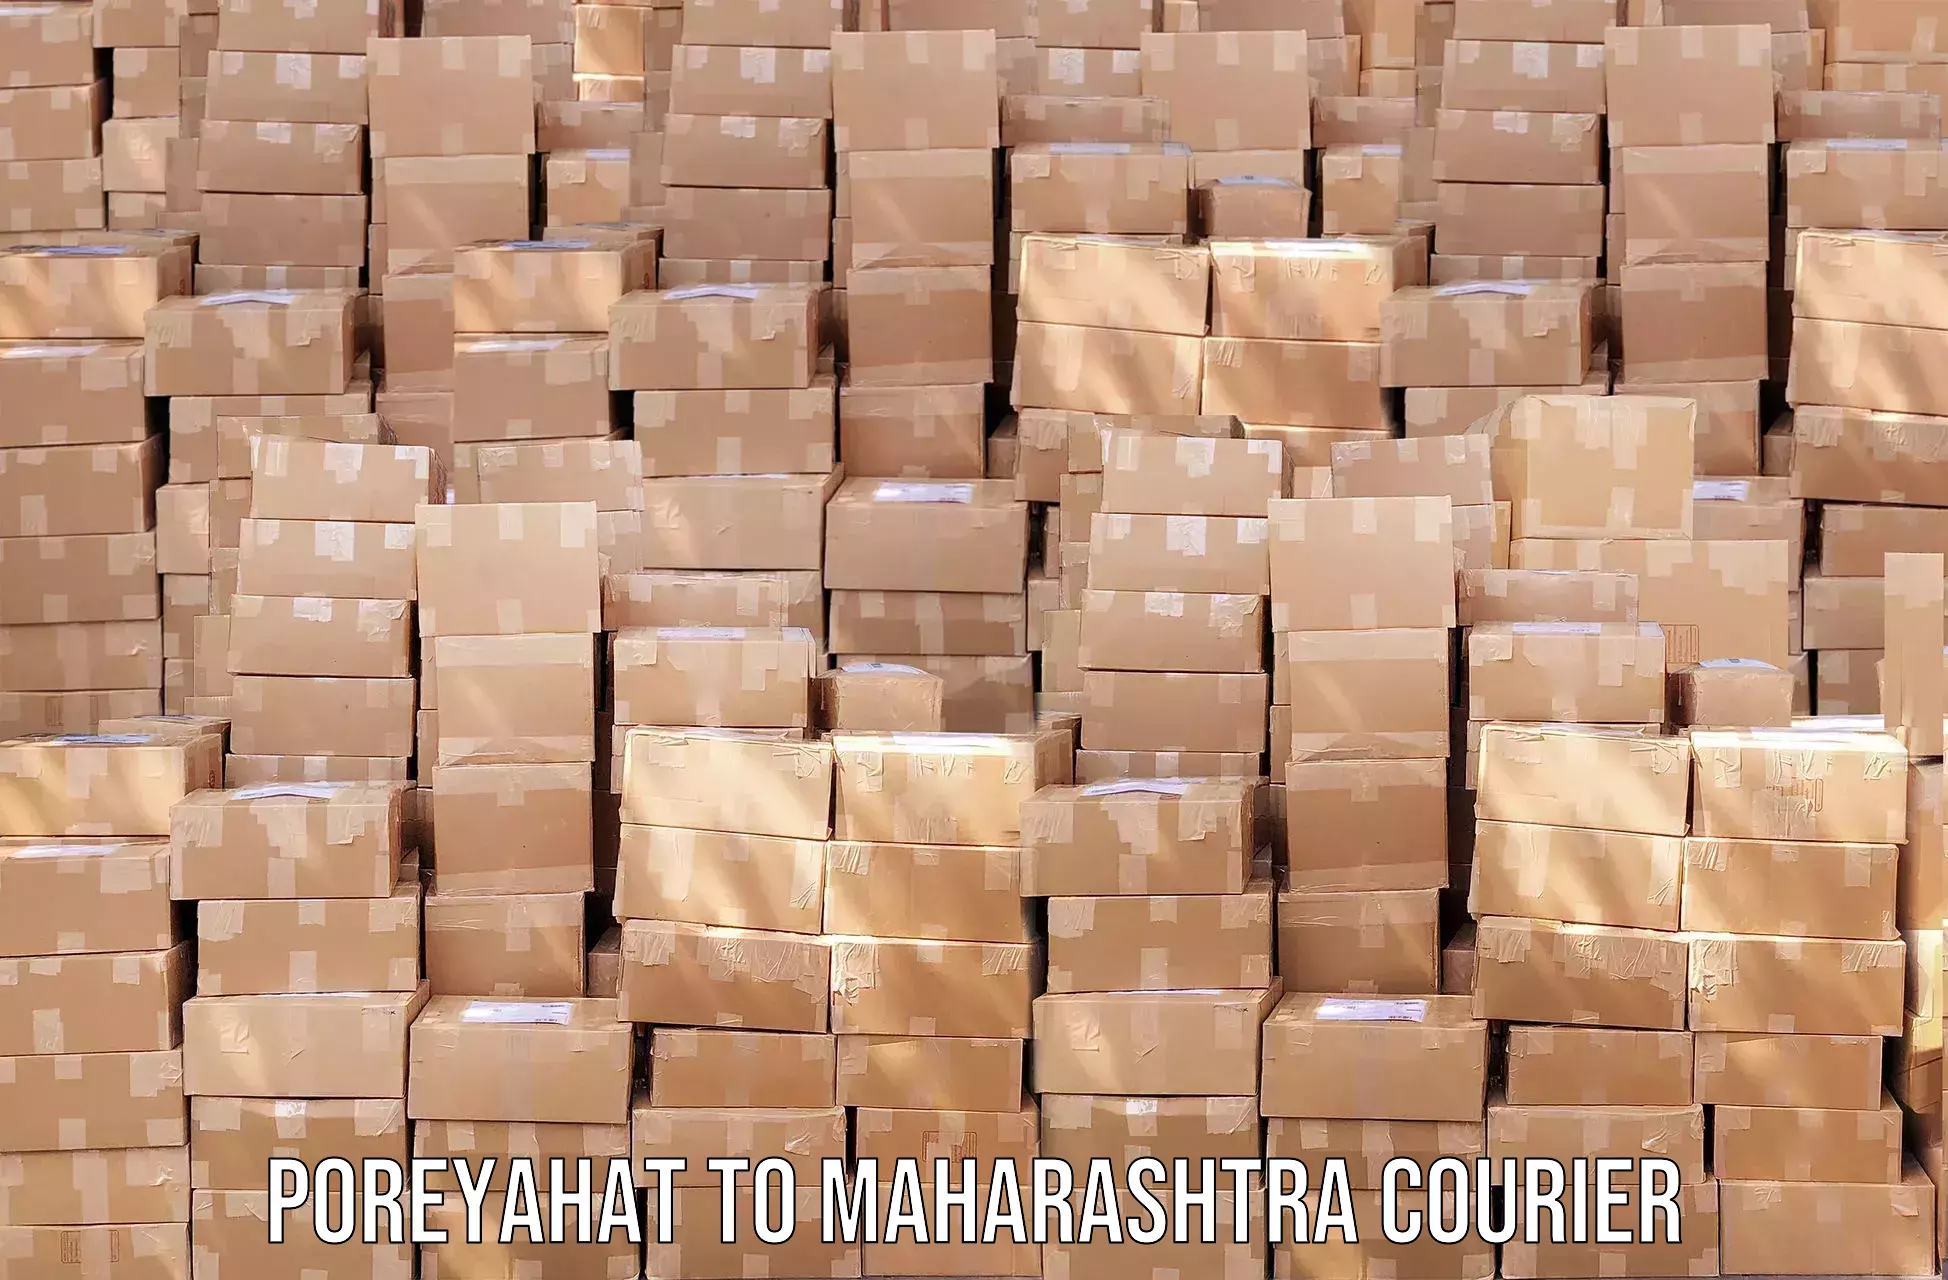 Cross-border shipping Poreyahat to Maharashtra